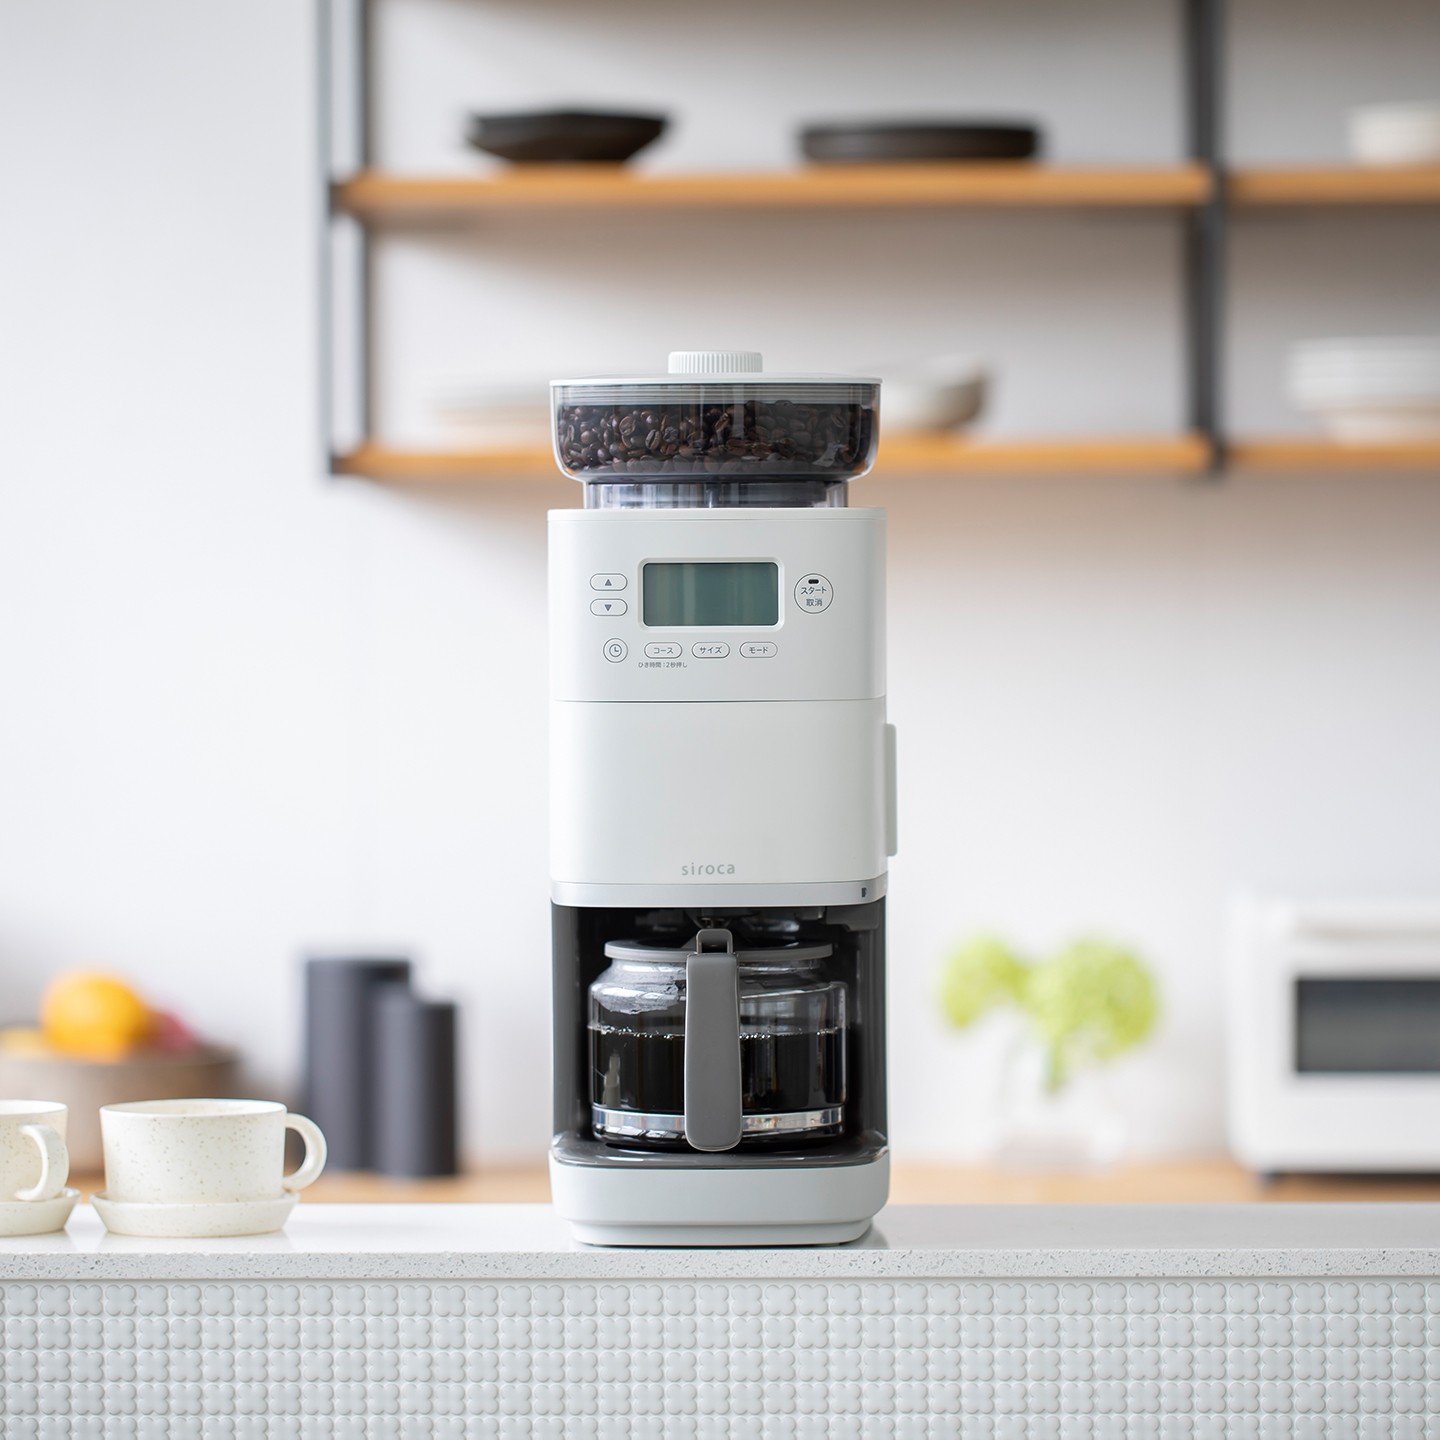 【加贈濾網】SC-C2510 全自動石臼式研磨咖啡機 淺灰色